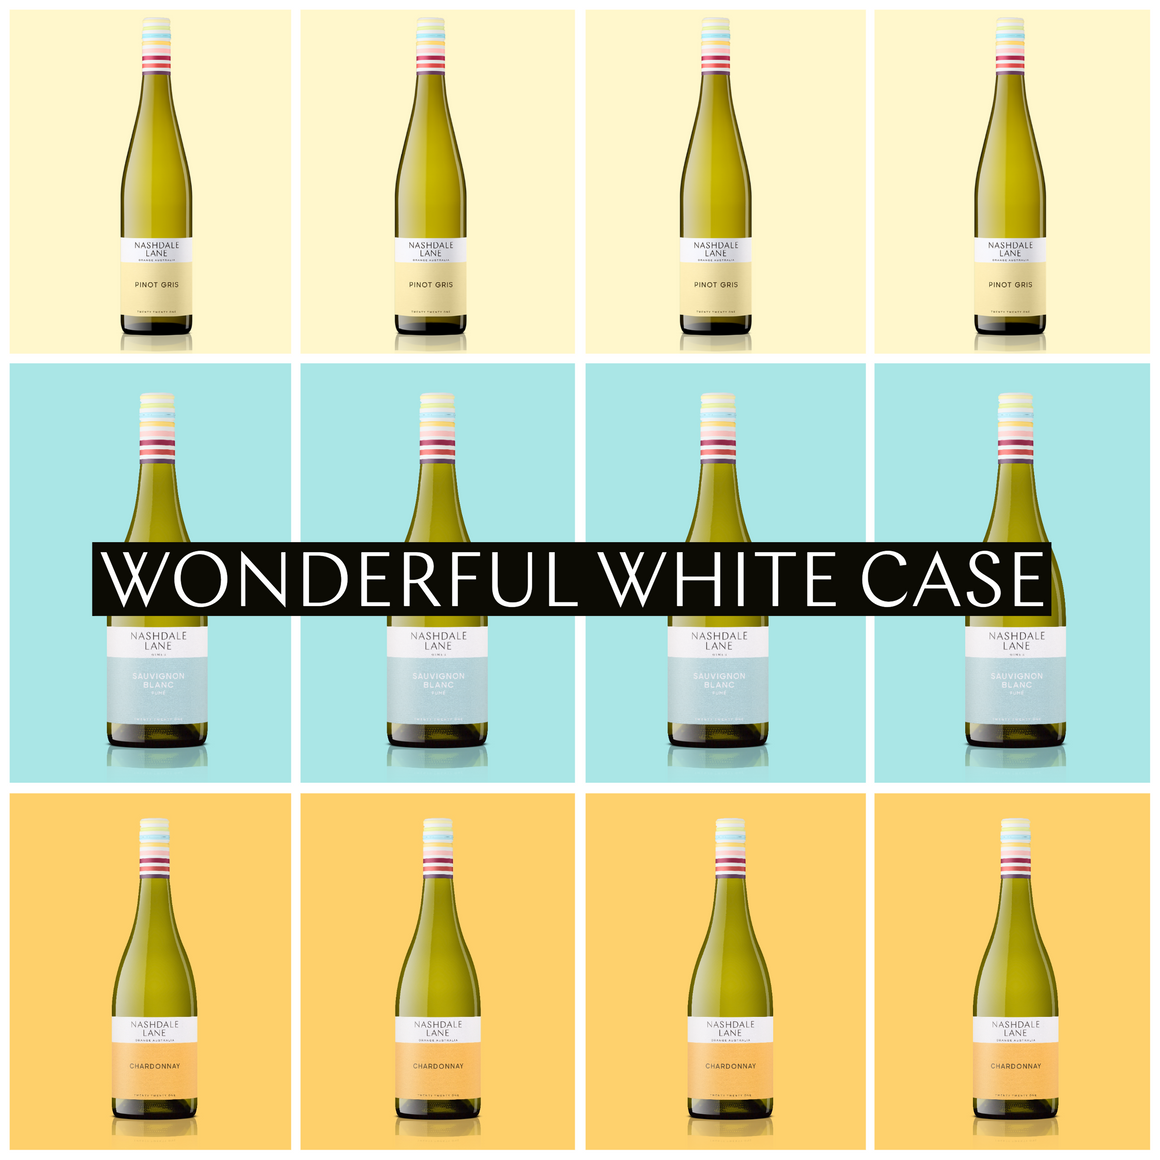 Wonderful Whites Case